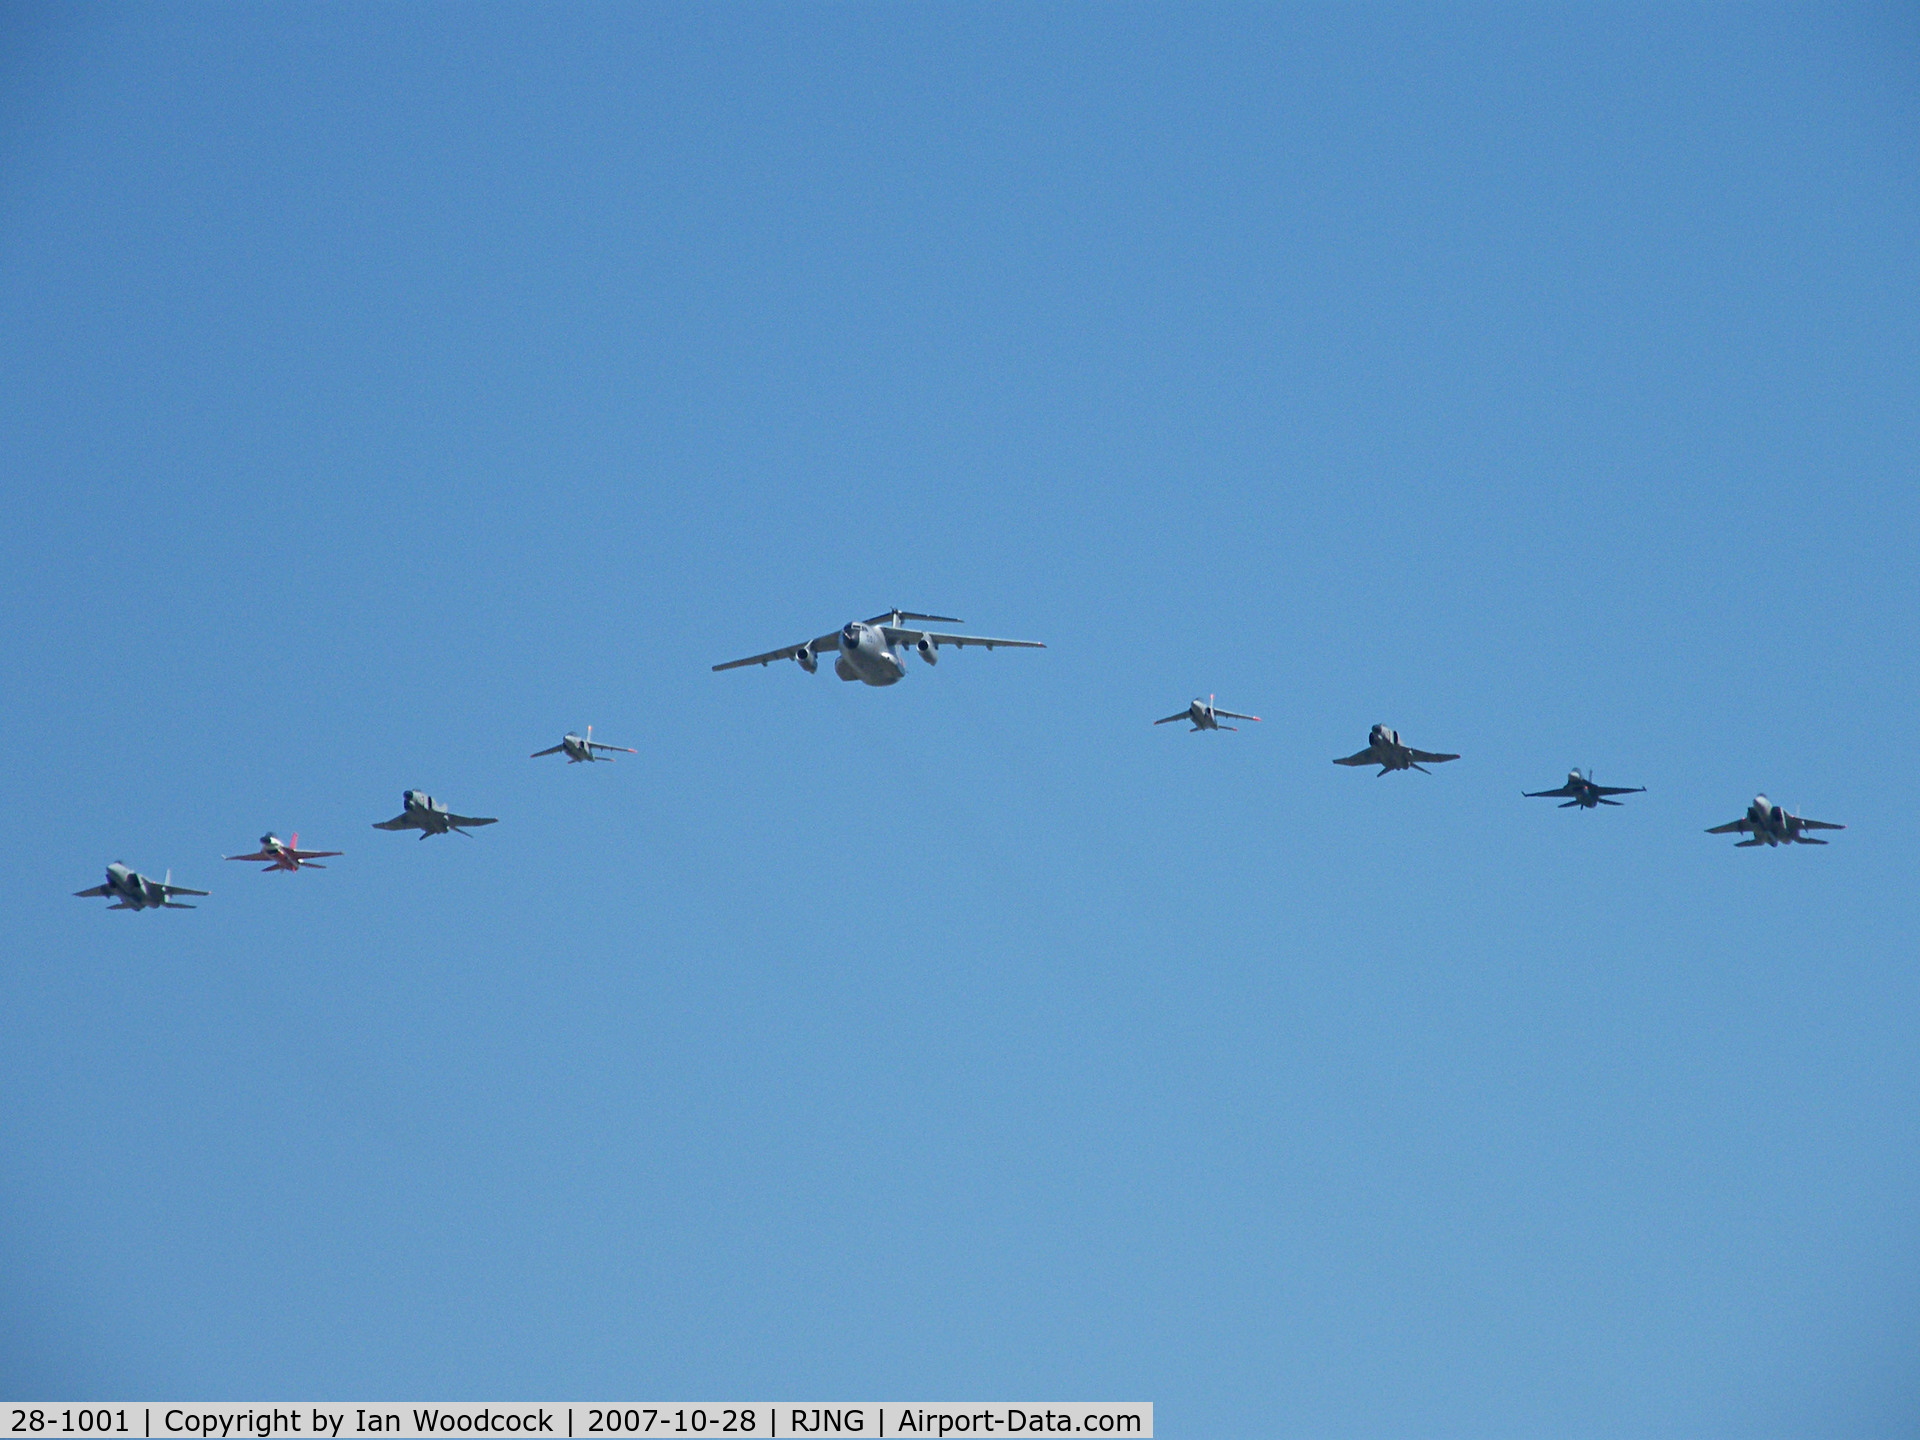 28-1001, Kawasaki C-1 C/N 8001, Kawasaki C-1/Gifu AB,Show (heads a flight of 2x T-4's,F-4EJ's,F-2's and F-15's)